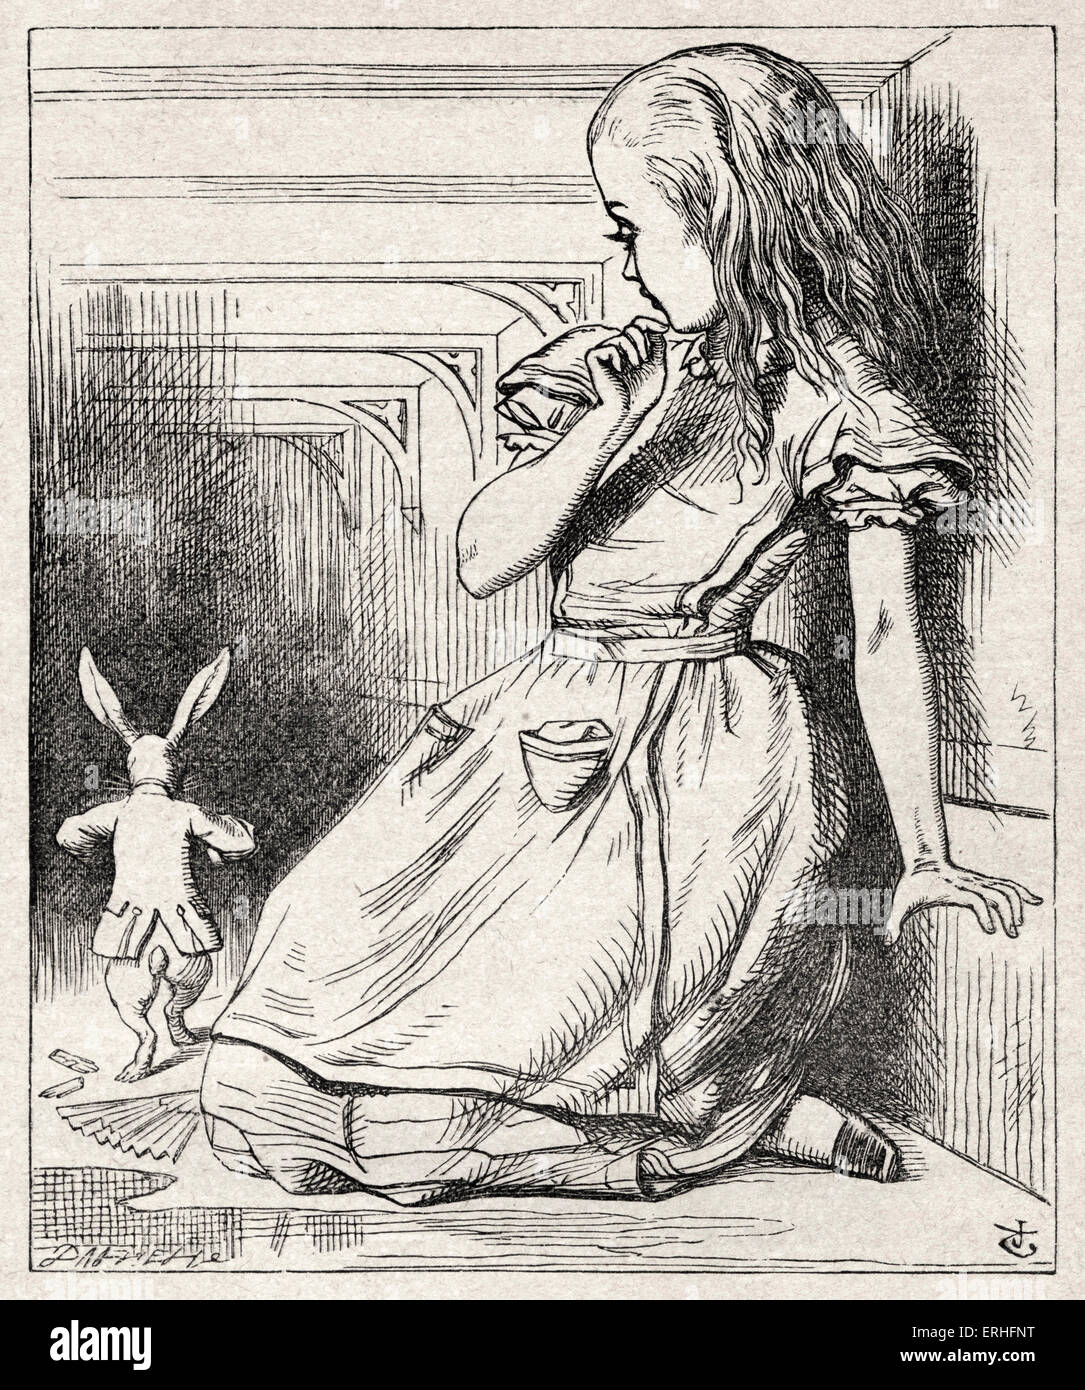 Alice et le lapin blanc, d'Alice au Pays des merveilles de Lewis Carroll (Charles Lutwidge Dodgson), anglais et auteur de livres pour enfants Banque D'Images